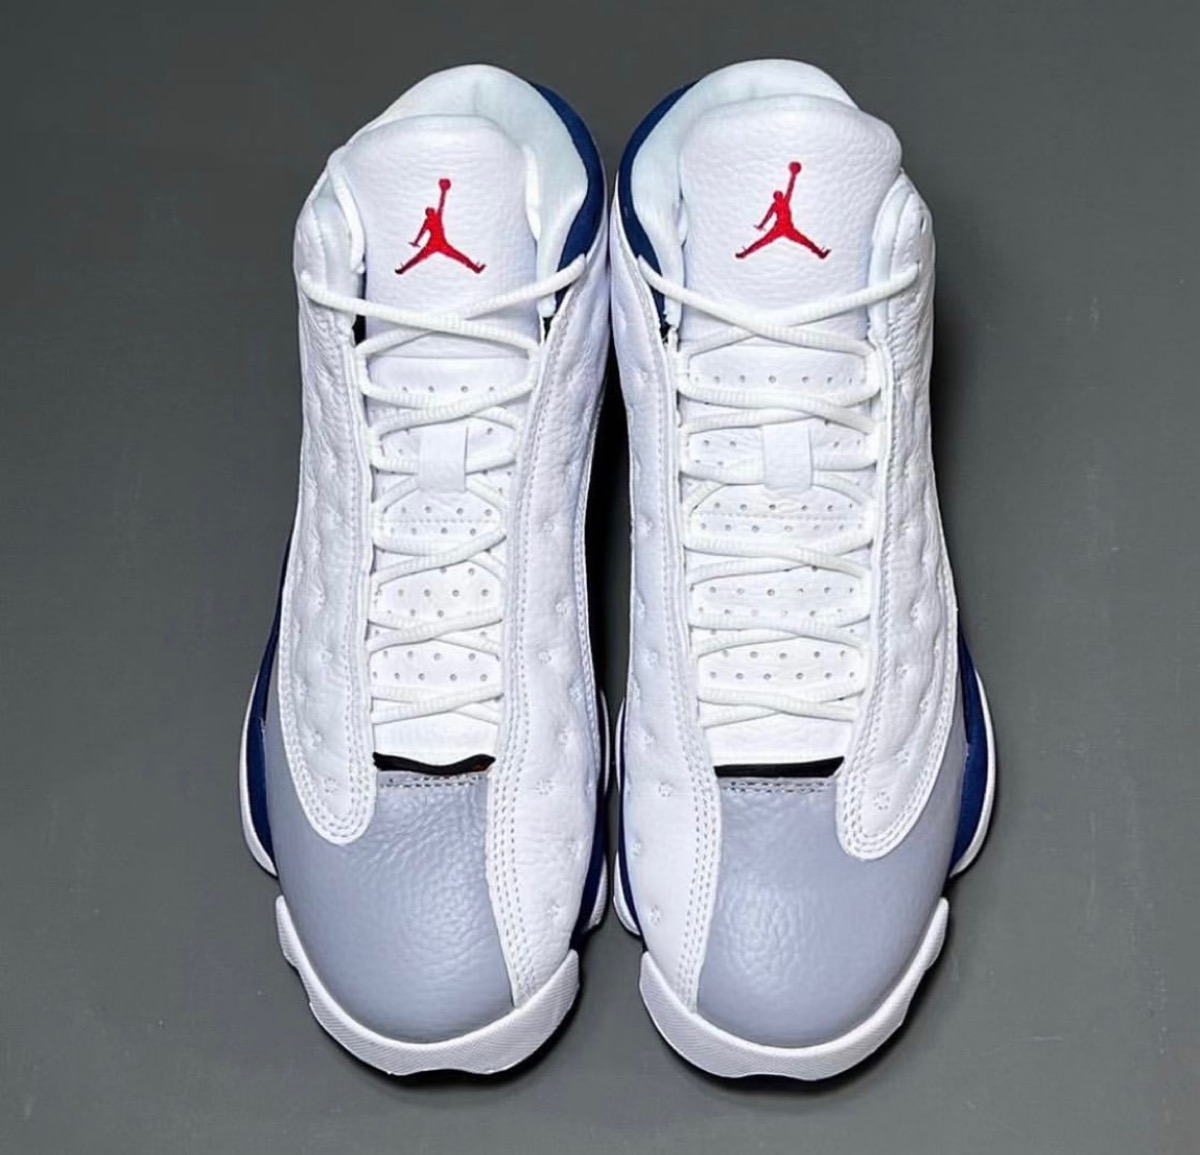 Nike Air Jordan 13 Retro “French Blue”が国内8月20日に発売予定 | UP 